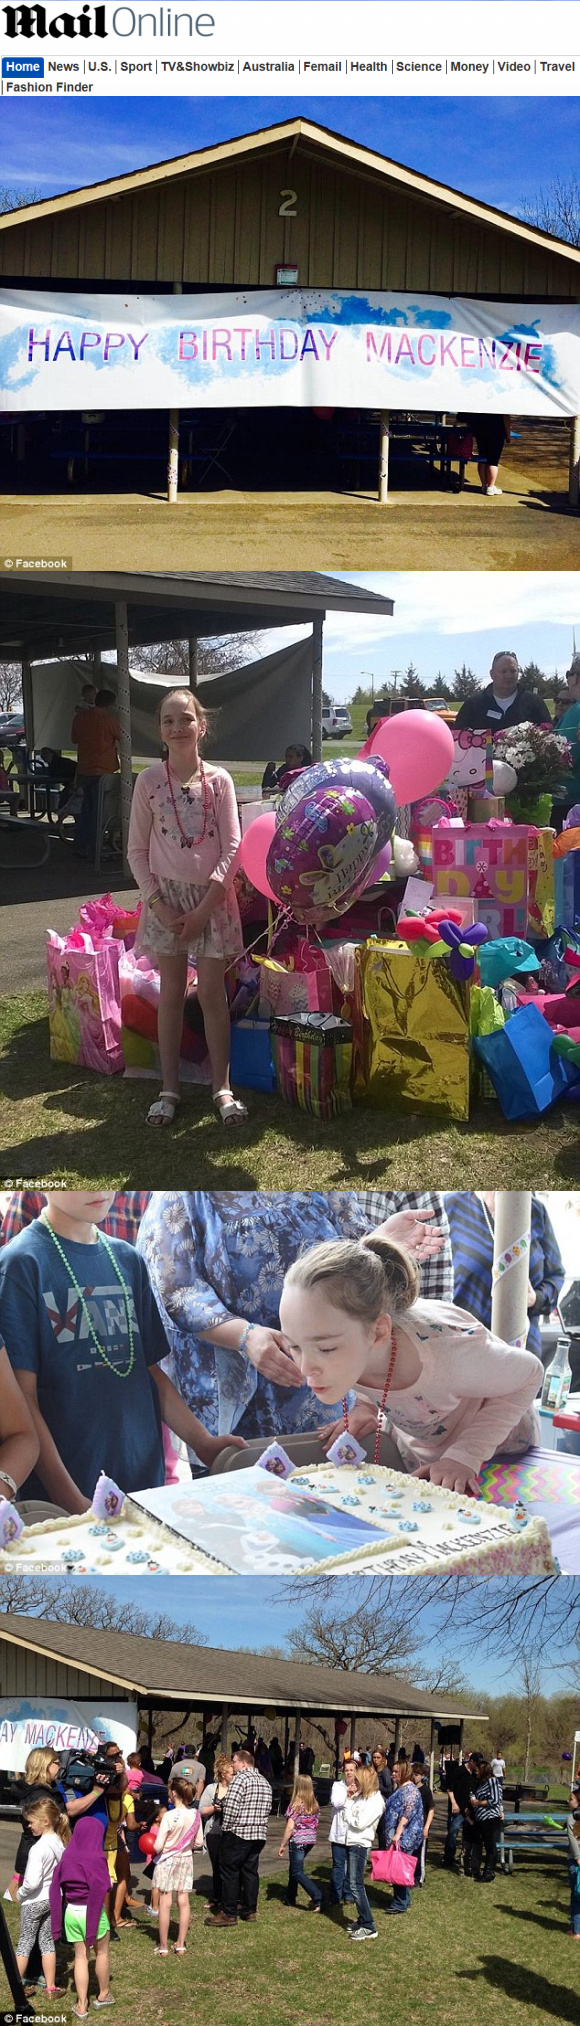 발달장애를 갖은 10살 왕따소녀의 생일파티에 700명의 축하객이 와 SNS 상에서 감동을 불러일으키고 있다. 영국 일간 데일리메일 화면 캡처/ 해당 페이스북